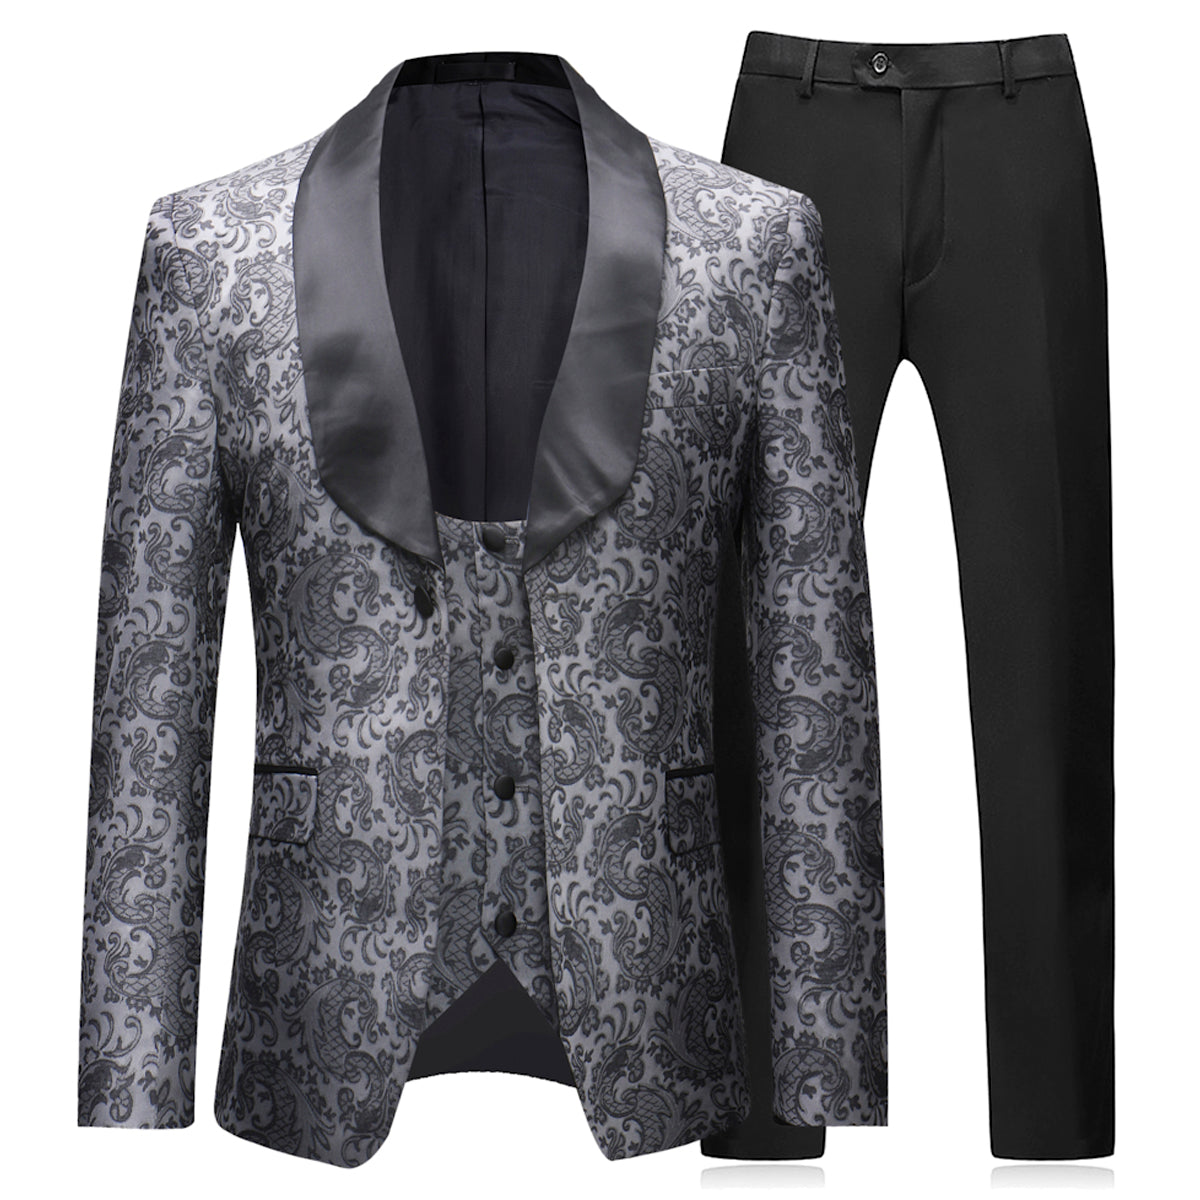 Mens Slim Fit Exquisite Pattern 3 Piece Suit Black